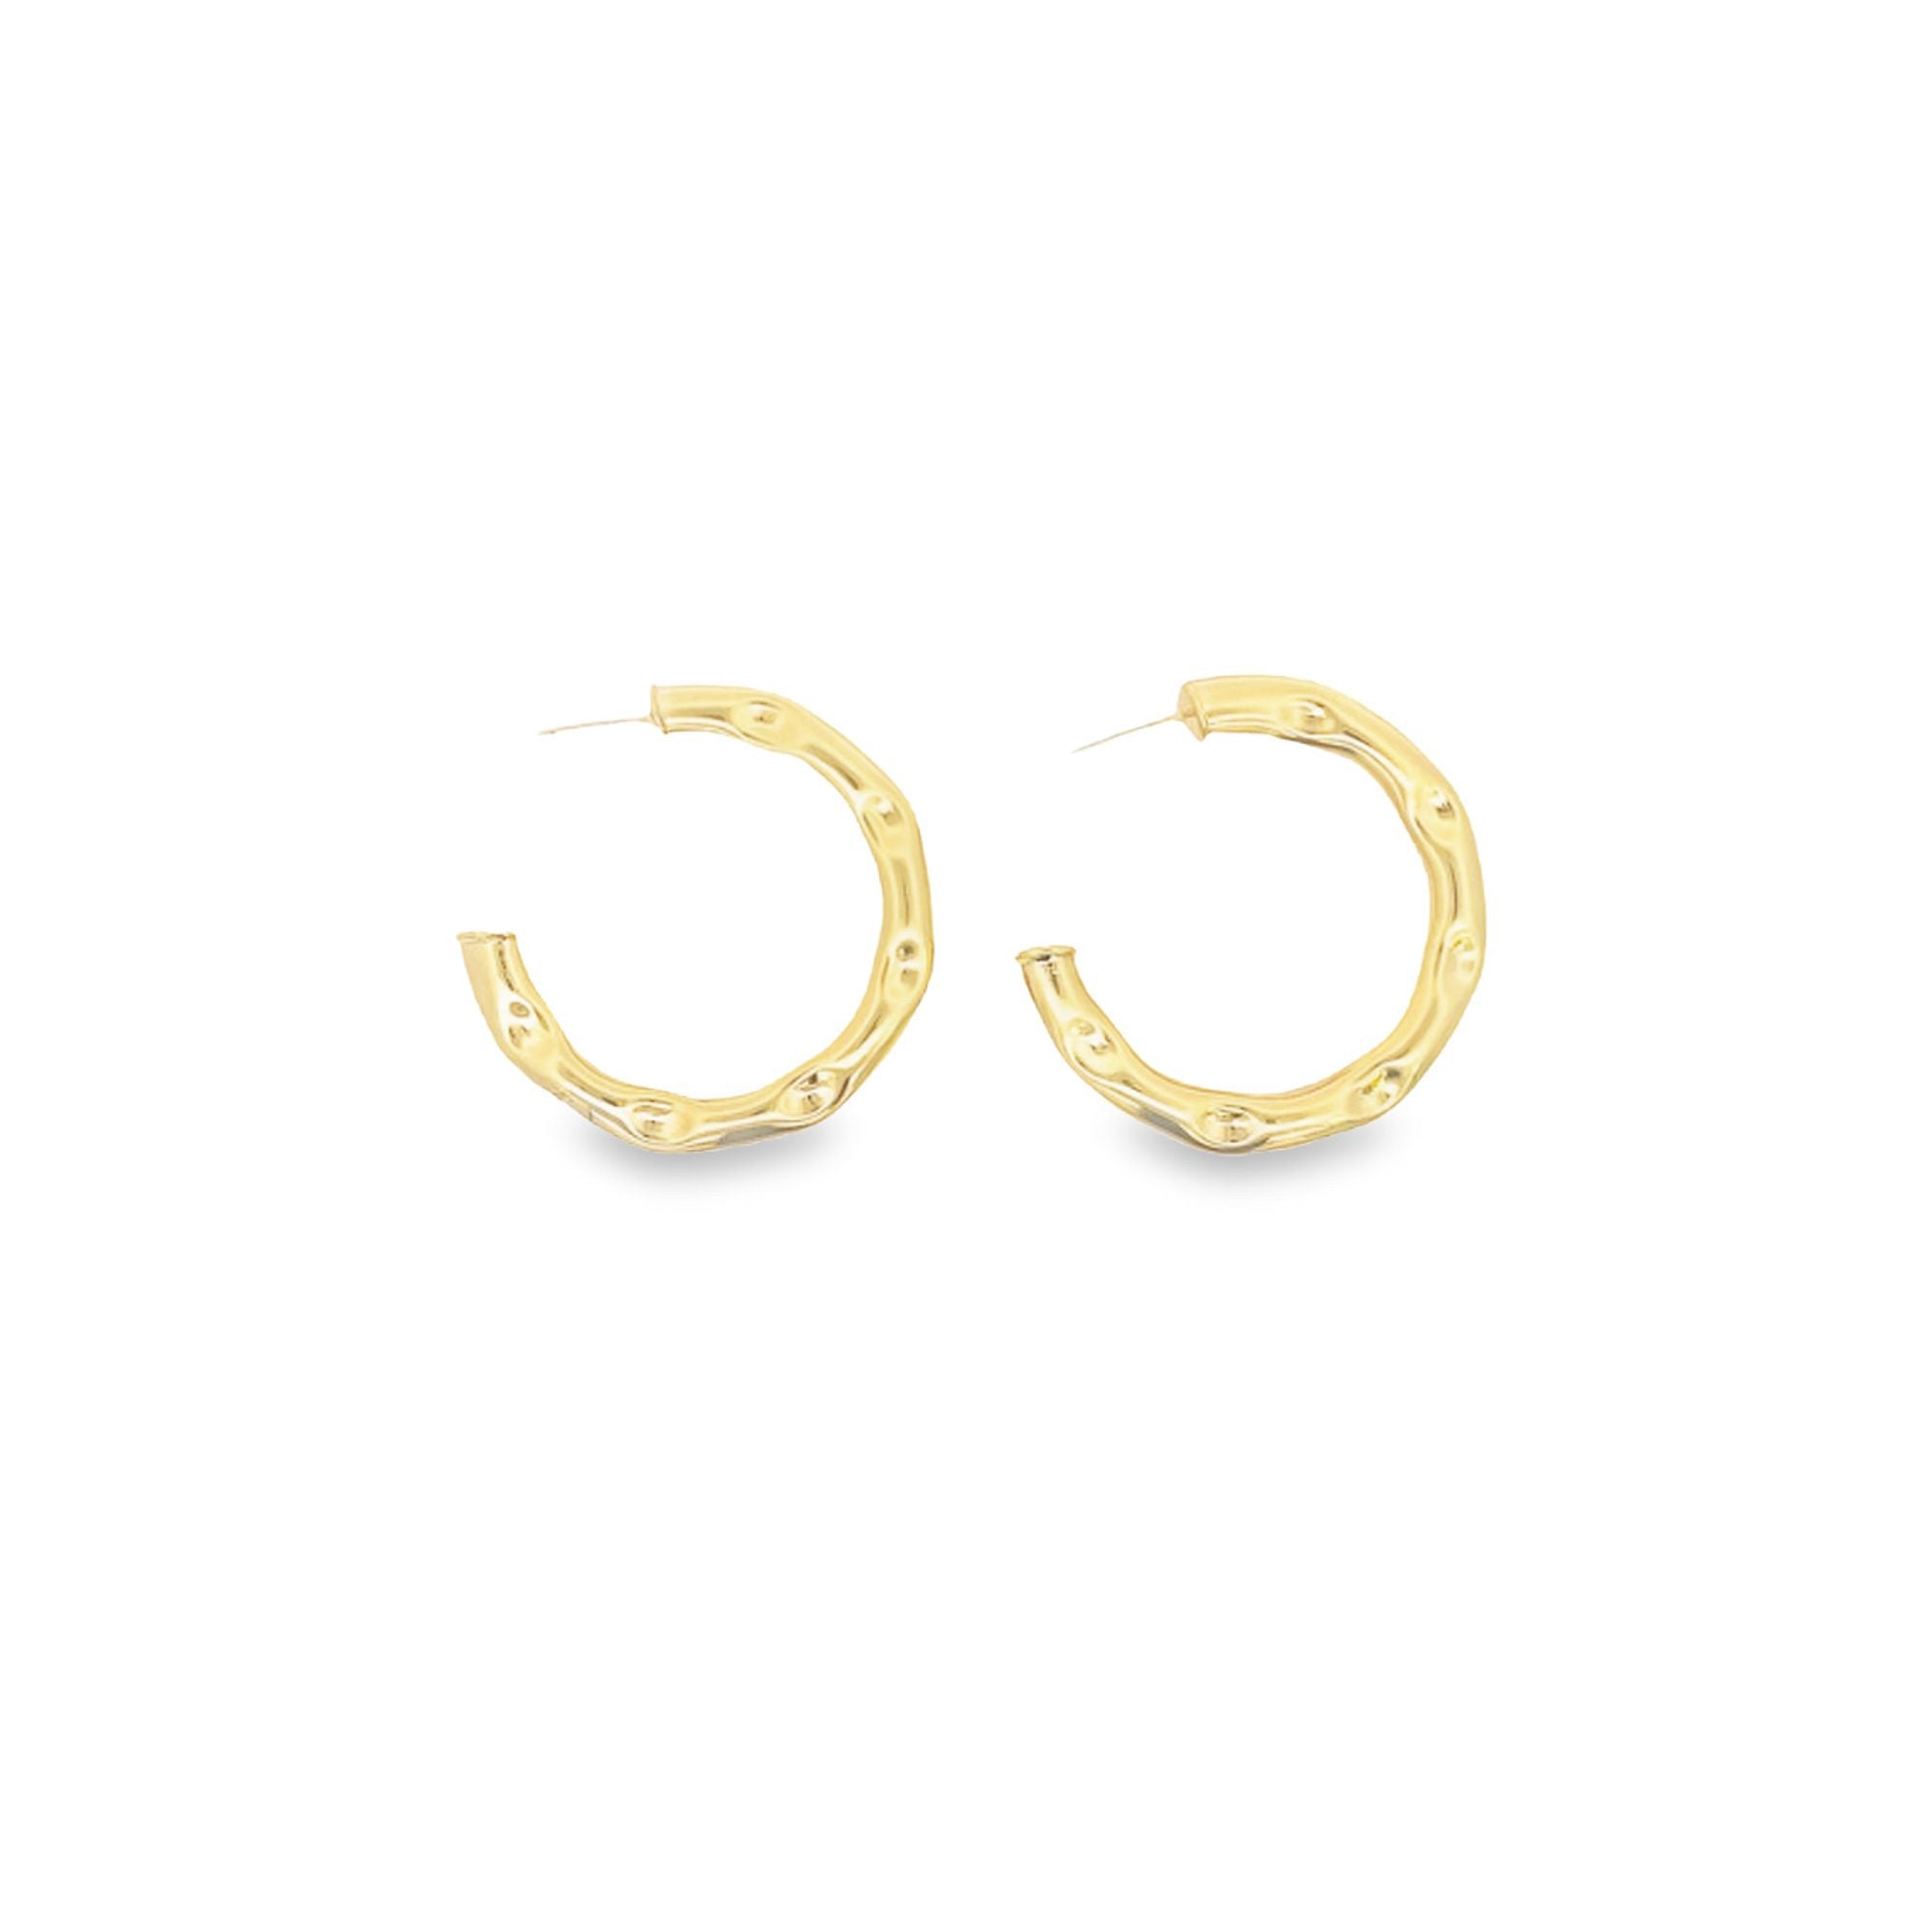 18K Gold/Rhodium Filled Slim Open Hoop Stud Earrings (L382)